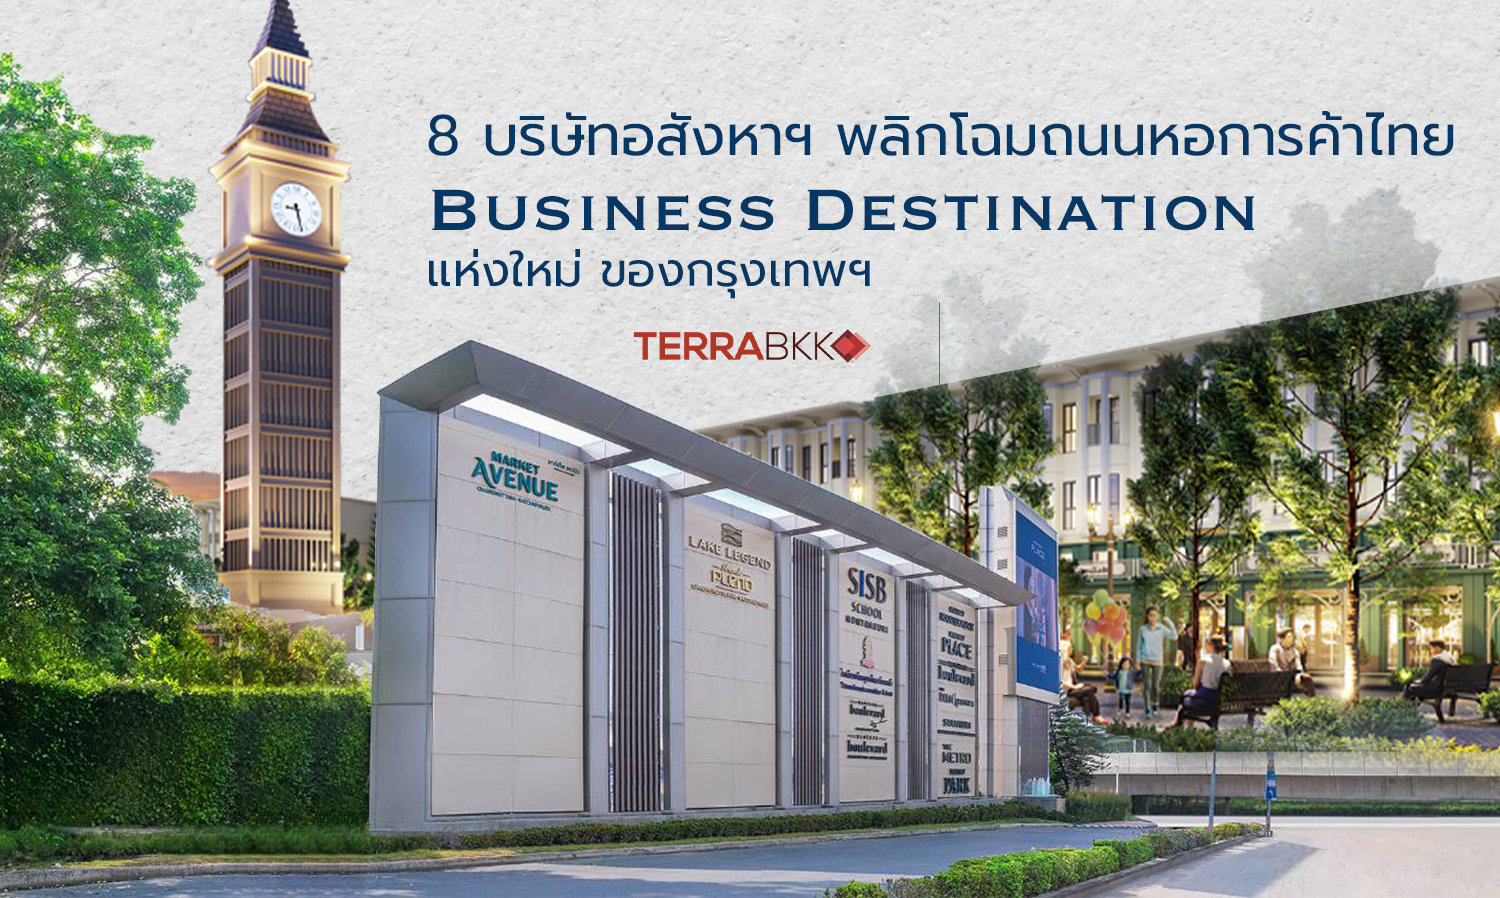 8 บริษัทอสังหาฯ พลิกโฉมถนนหอการค้าไทย Business Destination แห่งใหม่ ของกรุงเทพฯ ฝั่งตะวันตก